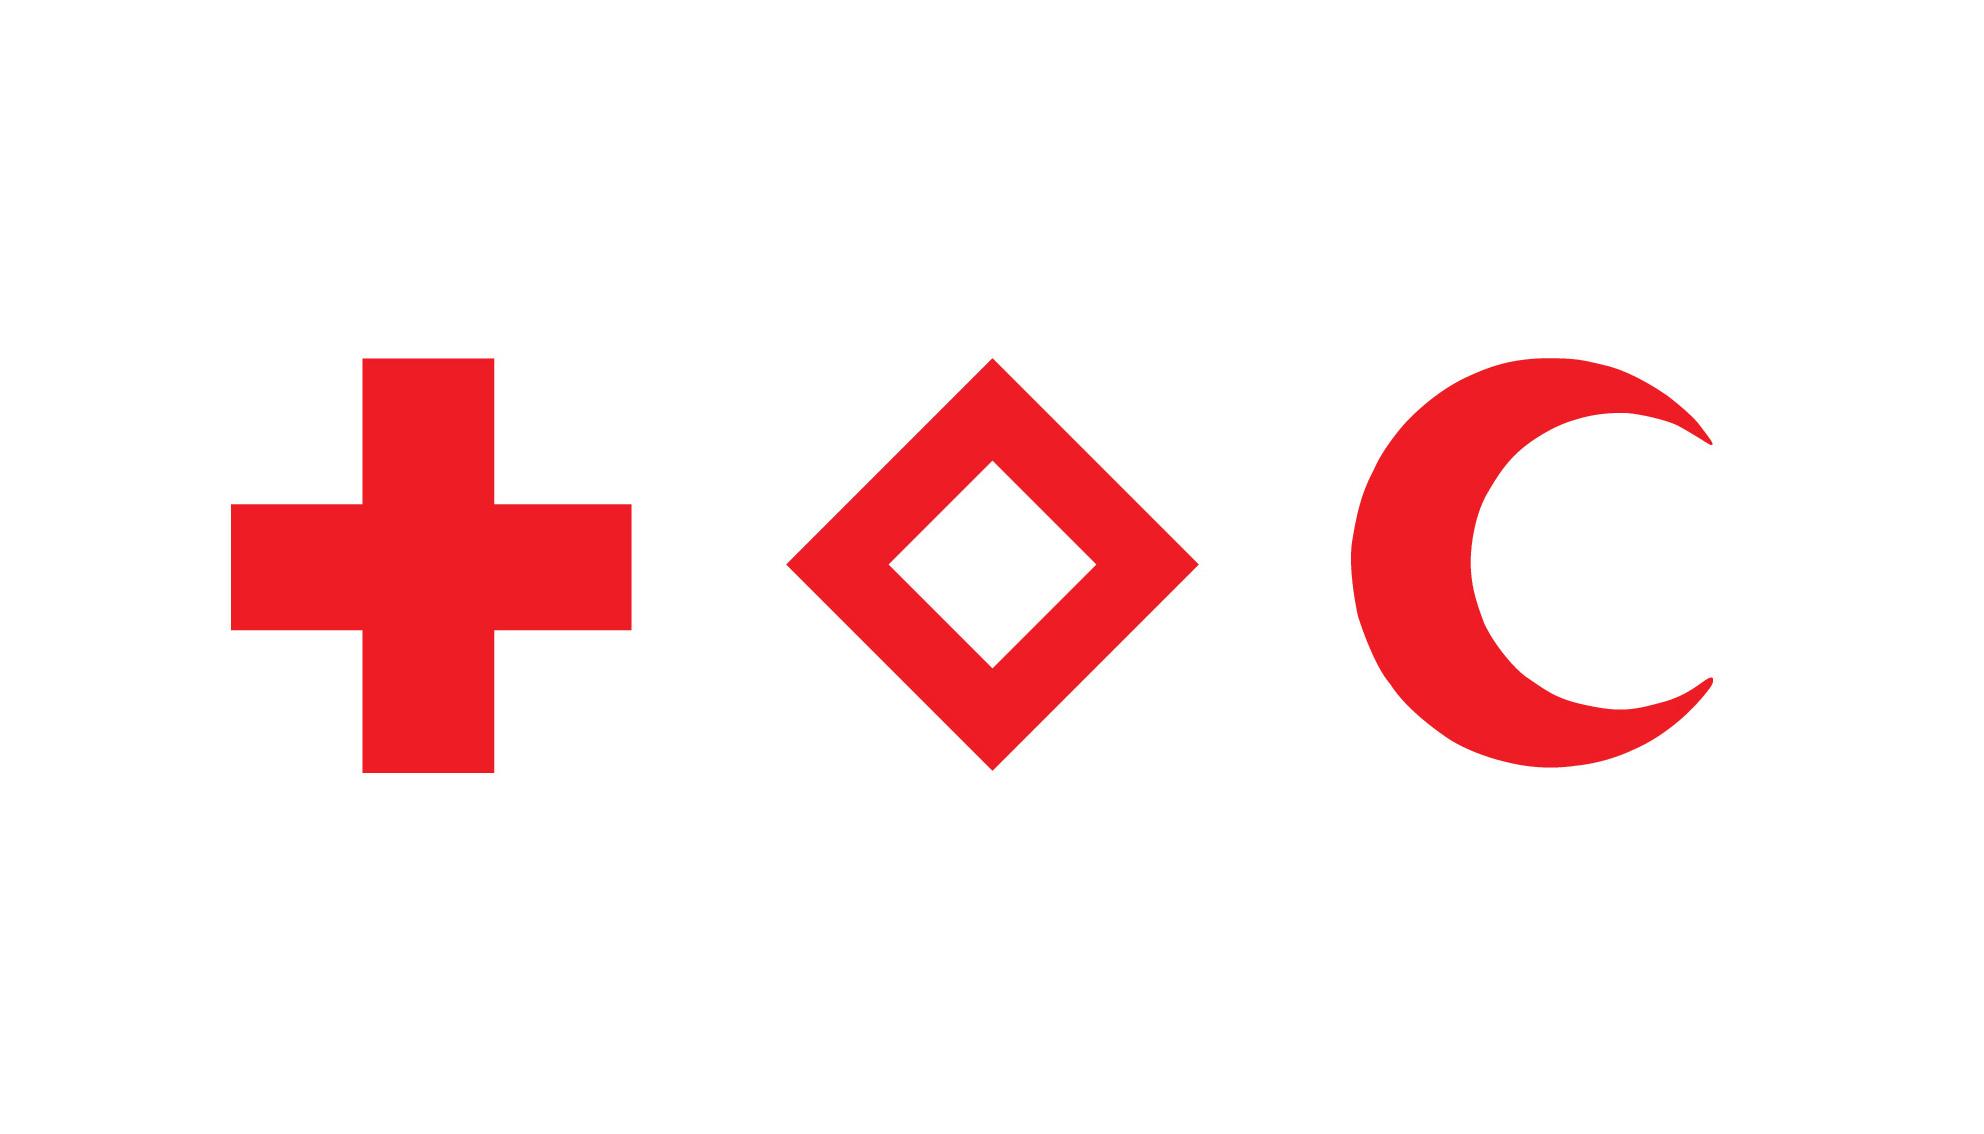 Grafik mit den drei Emblemen Rotes Kreuz, Roter Kristall und Roter Halbmond